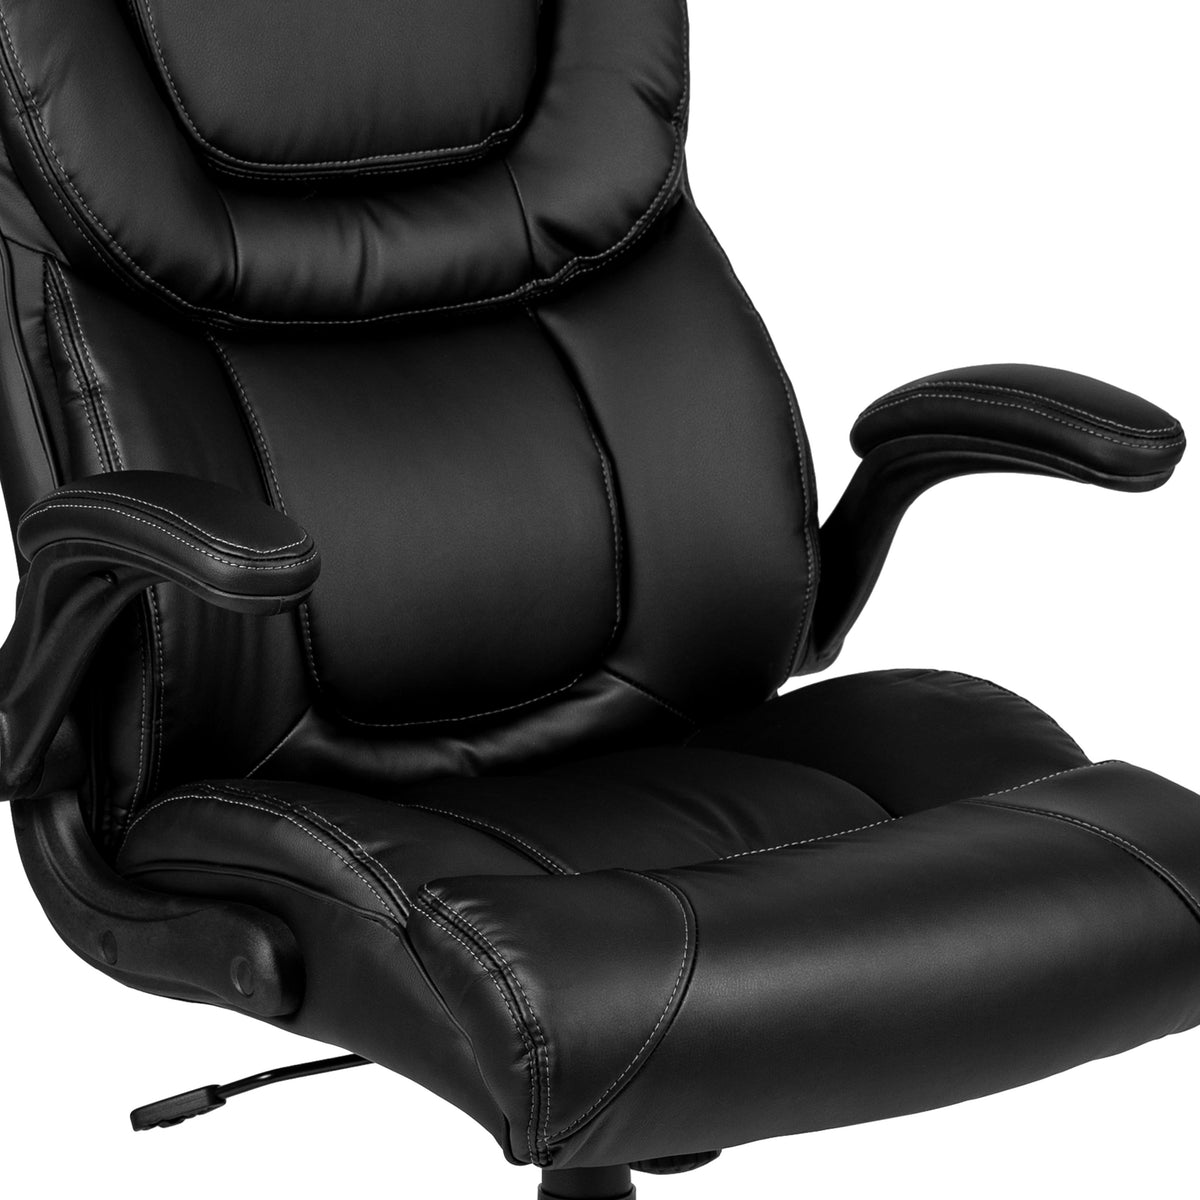 High Back Exec Office Chair BT-134A- – BizChair